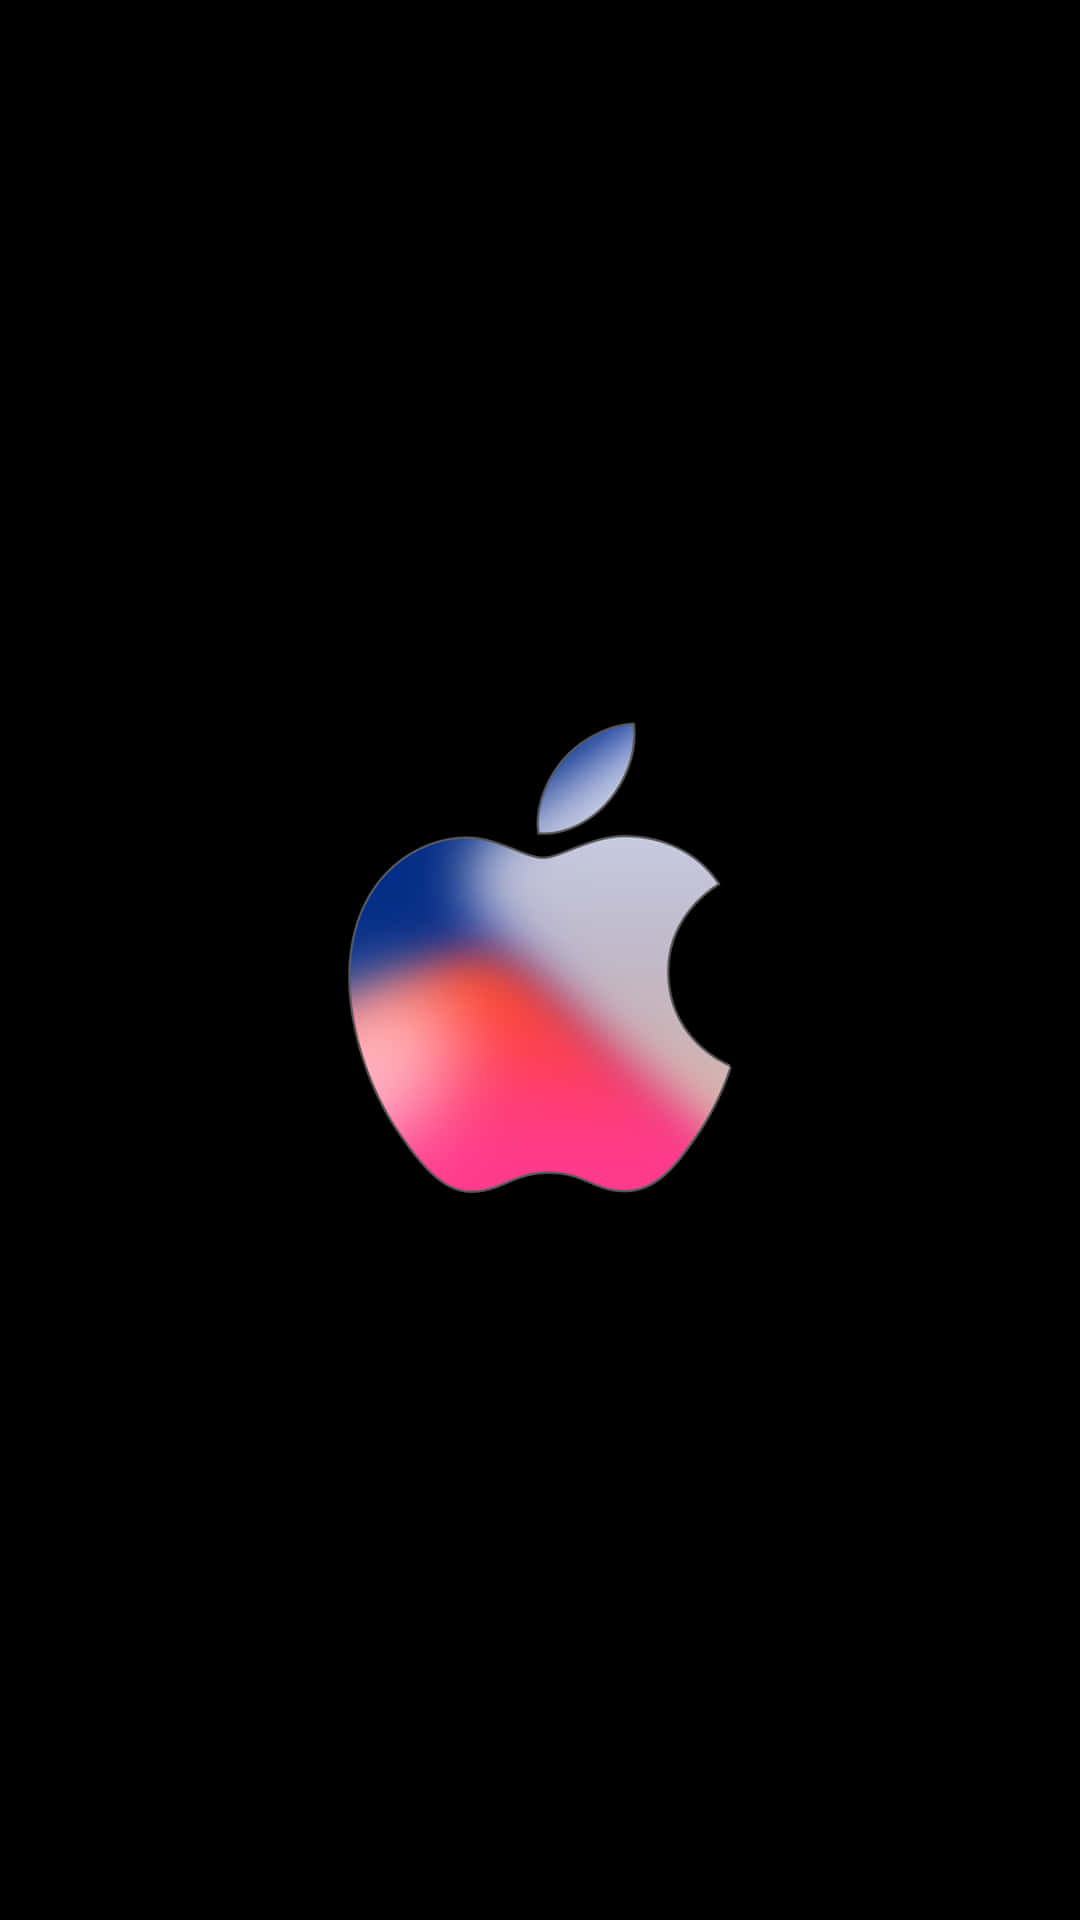 Logoazul Y Rosa Increíble De Apple Hd Para Iphone. Fondo de pantalla